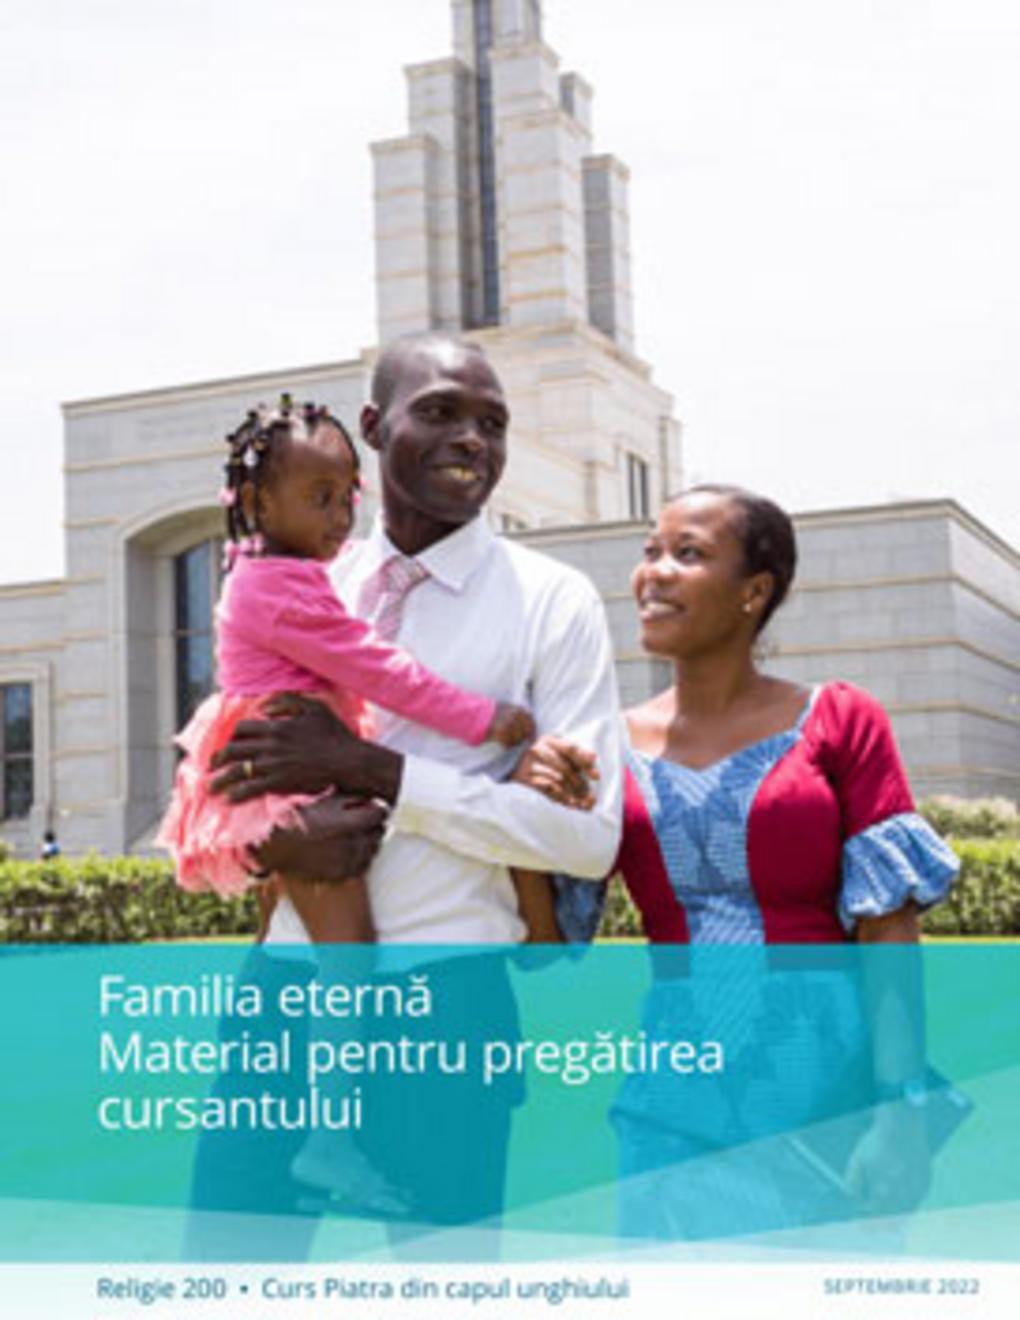 Familia eternă – material pentru pregătirea cursantului (Religie 200)